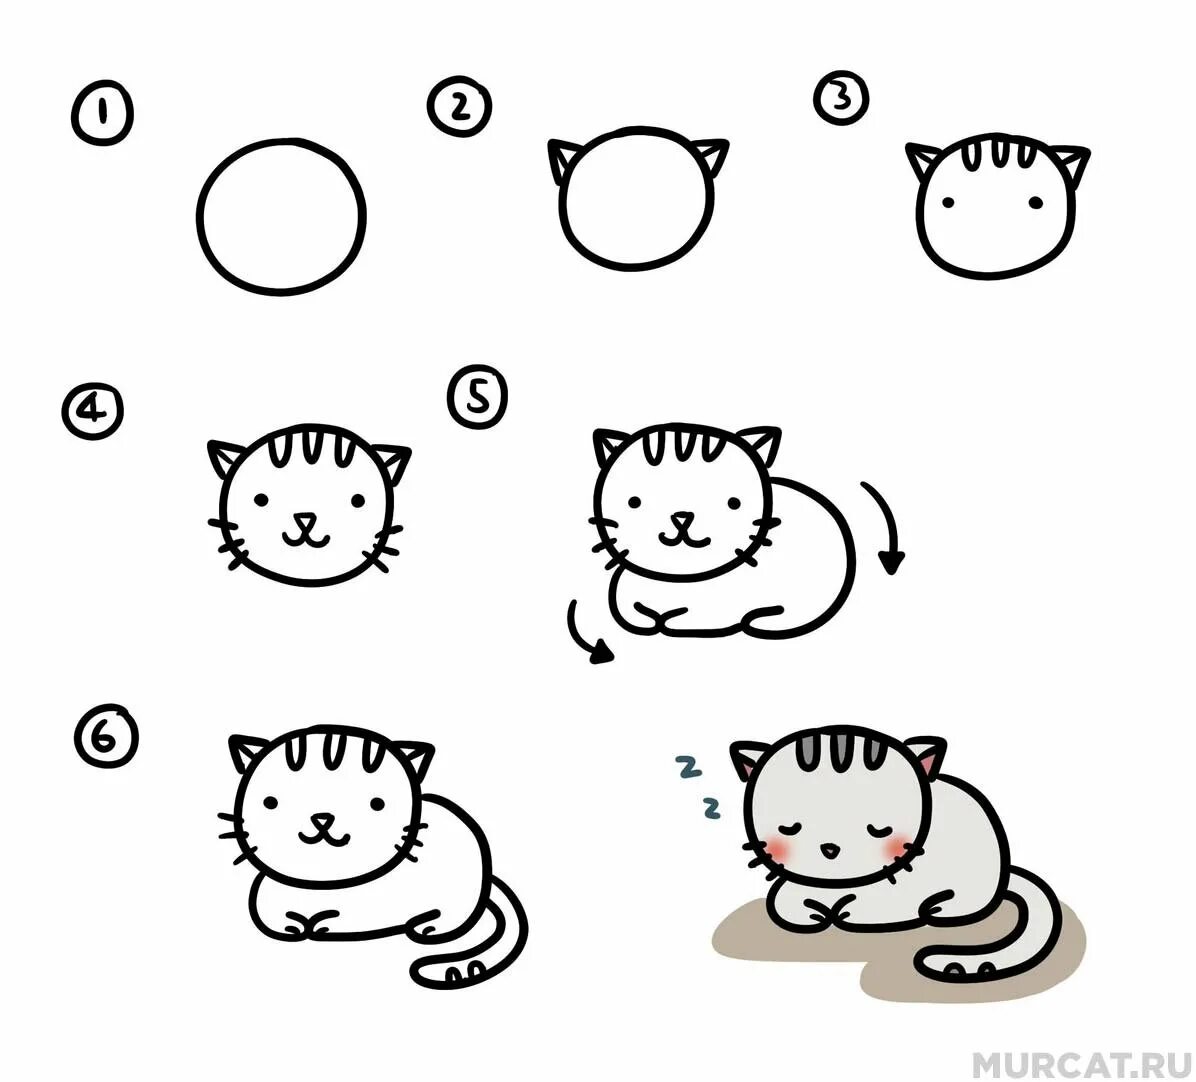 Схема рисования котенка для детей. Схема рисования кошки для дошкольников. Поэтапное рисование котика для детей. Простые схемы рисования для малышей. Как нарисовать кота поэтапно для детей